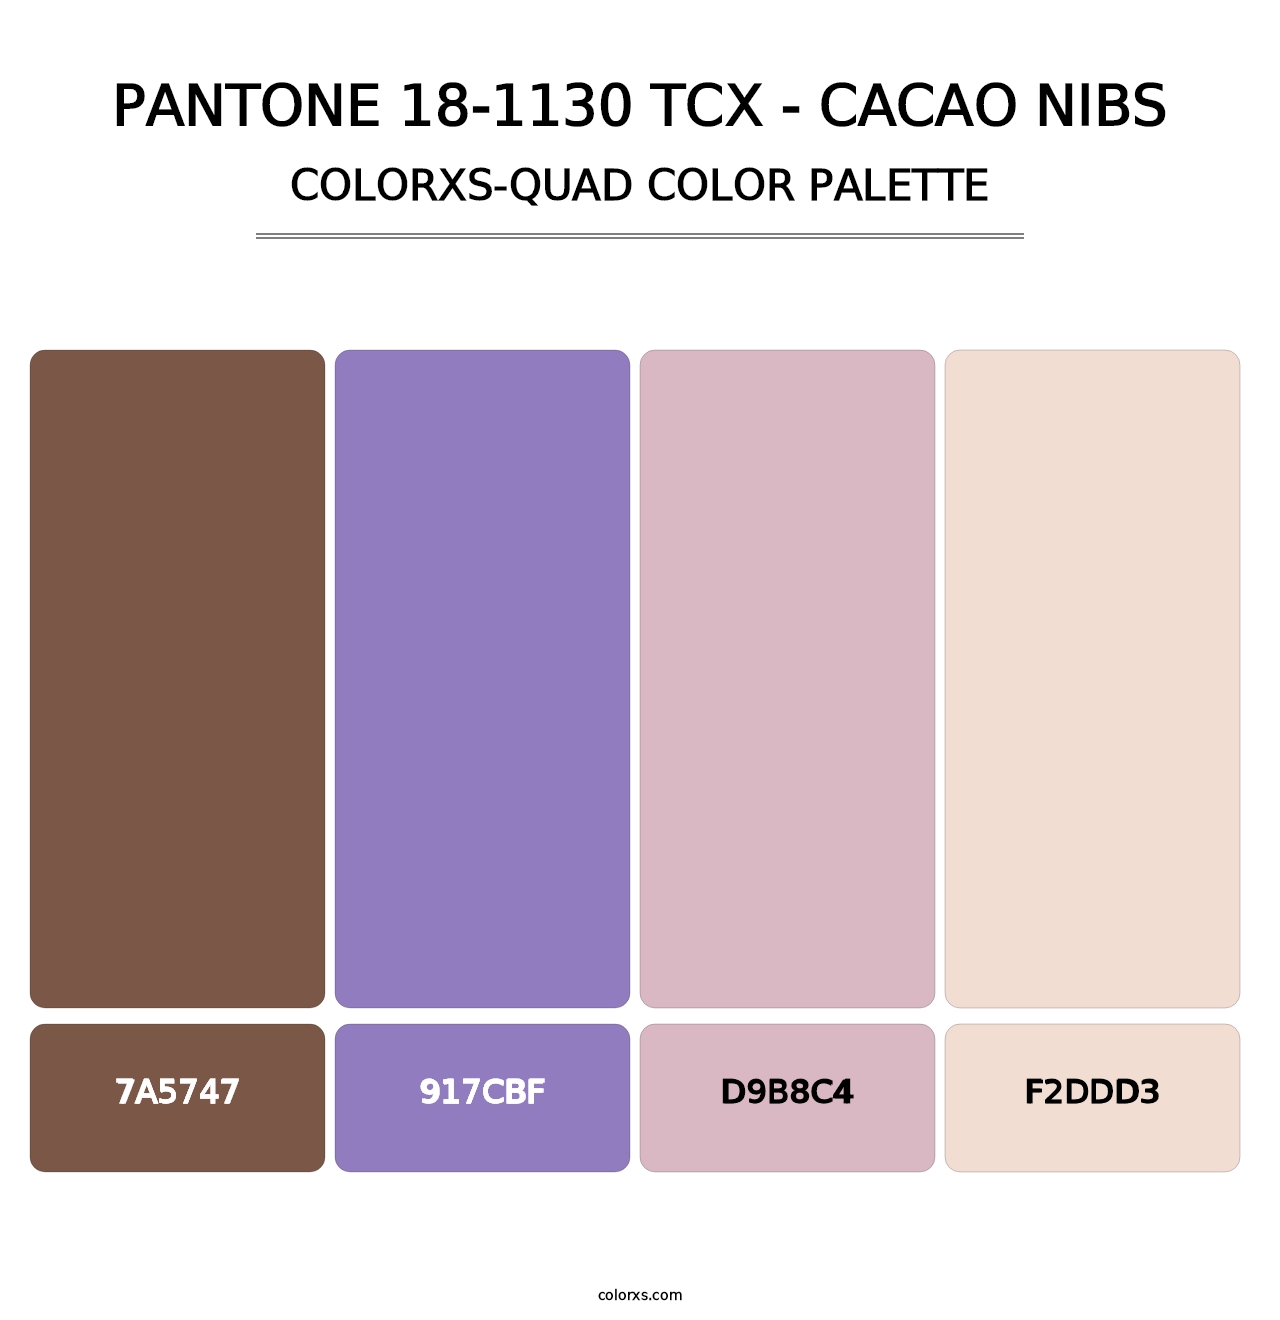 PANTONE 18-1130 TCX - Cacao Nibs - Colorxs Quad Palette